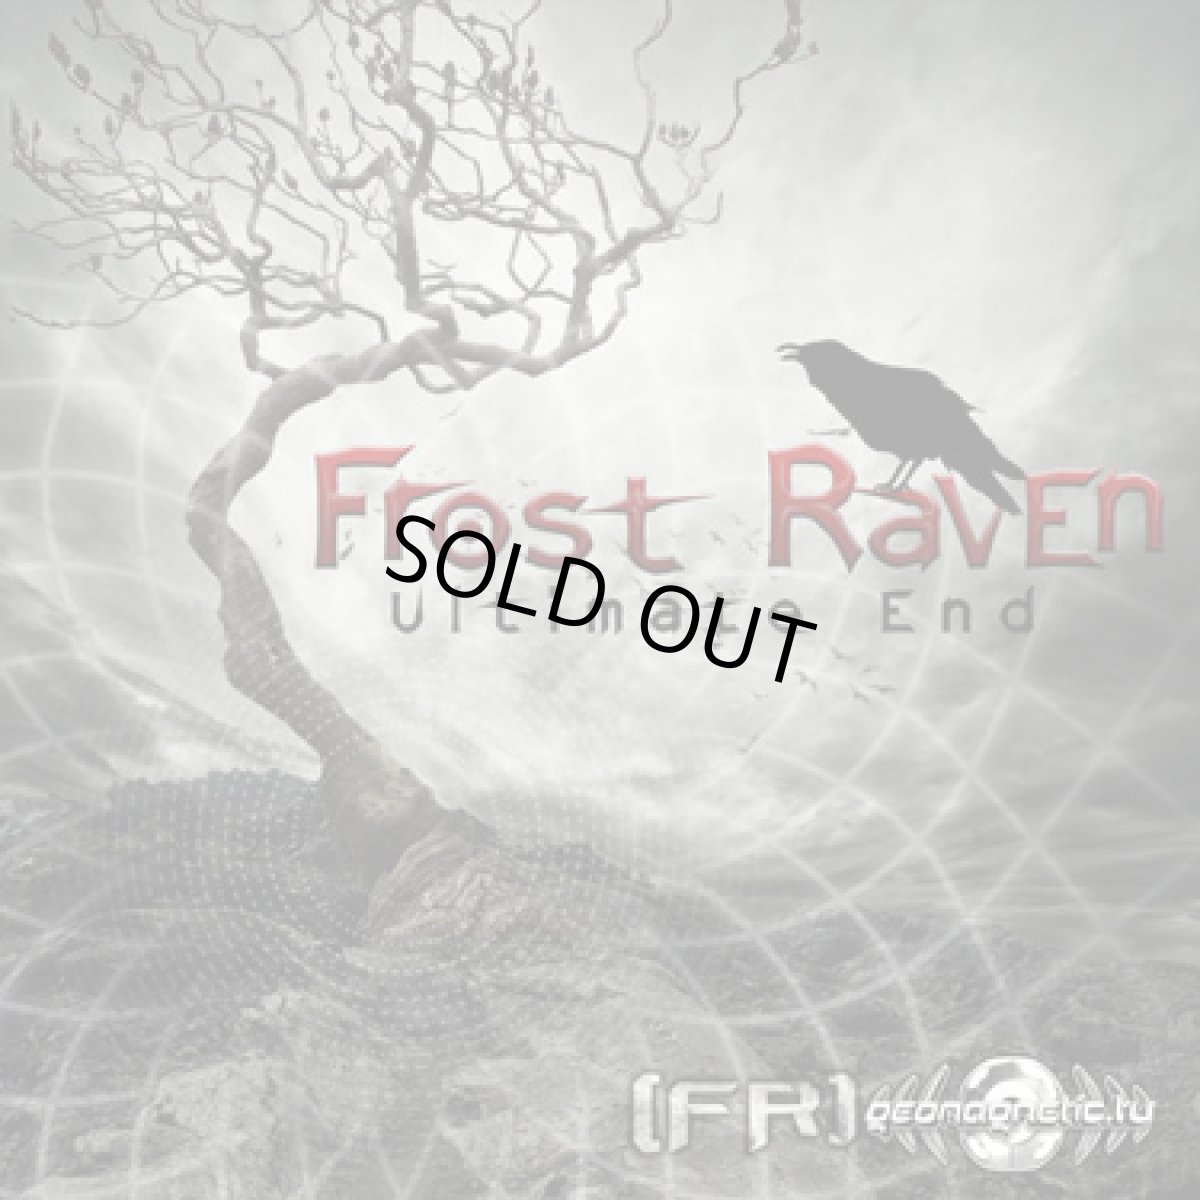 画像1: CD「FROST RAVEN / Ultimate End」【PSY・プログレッシヴトランス】 (1)